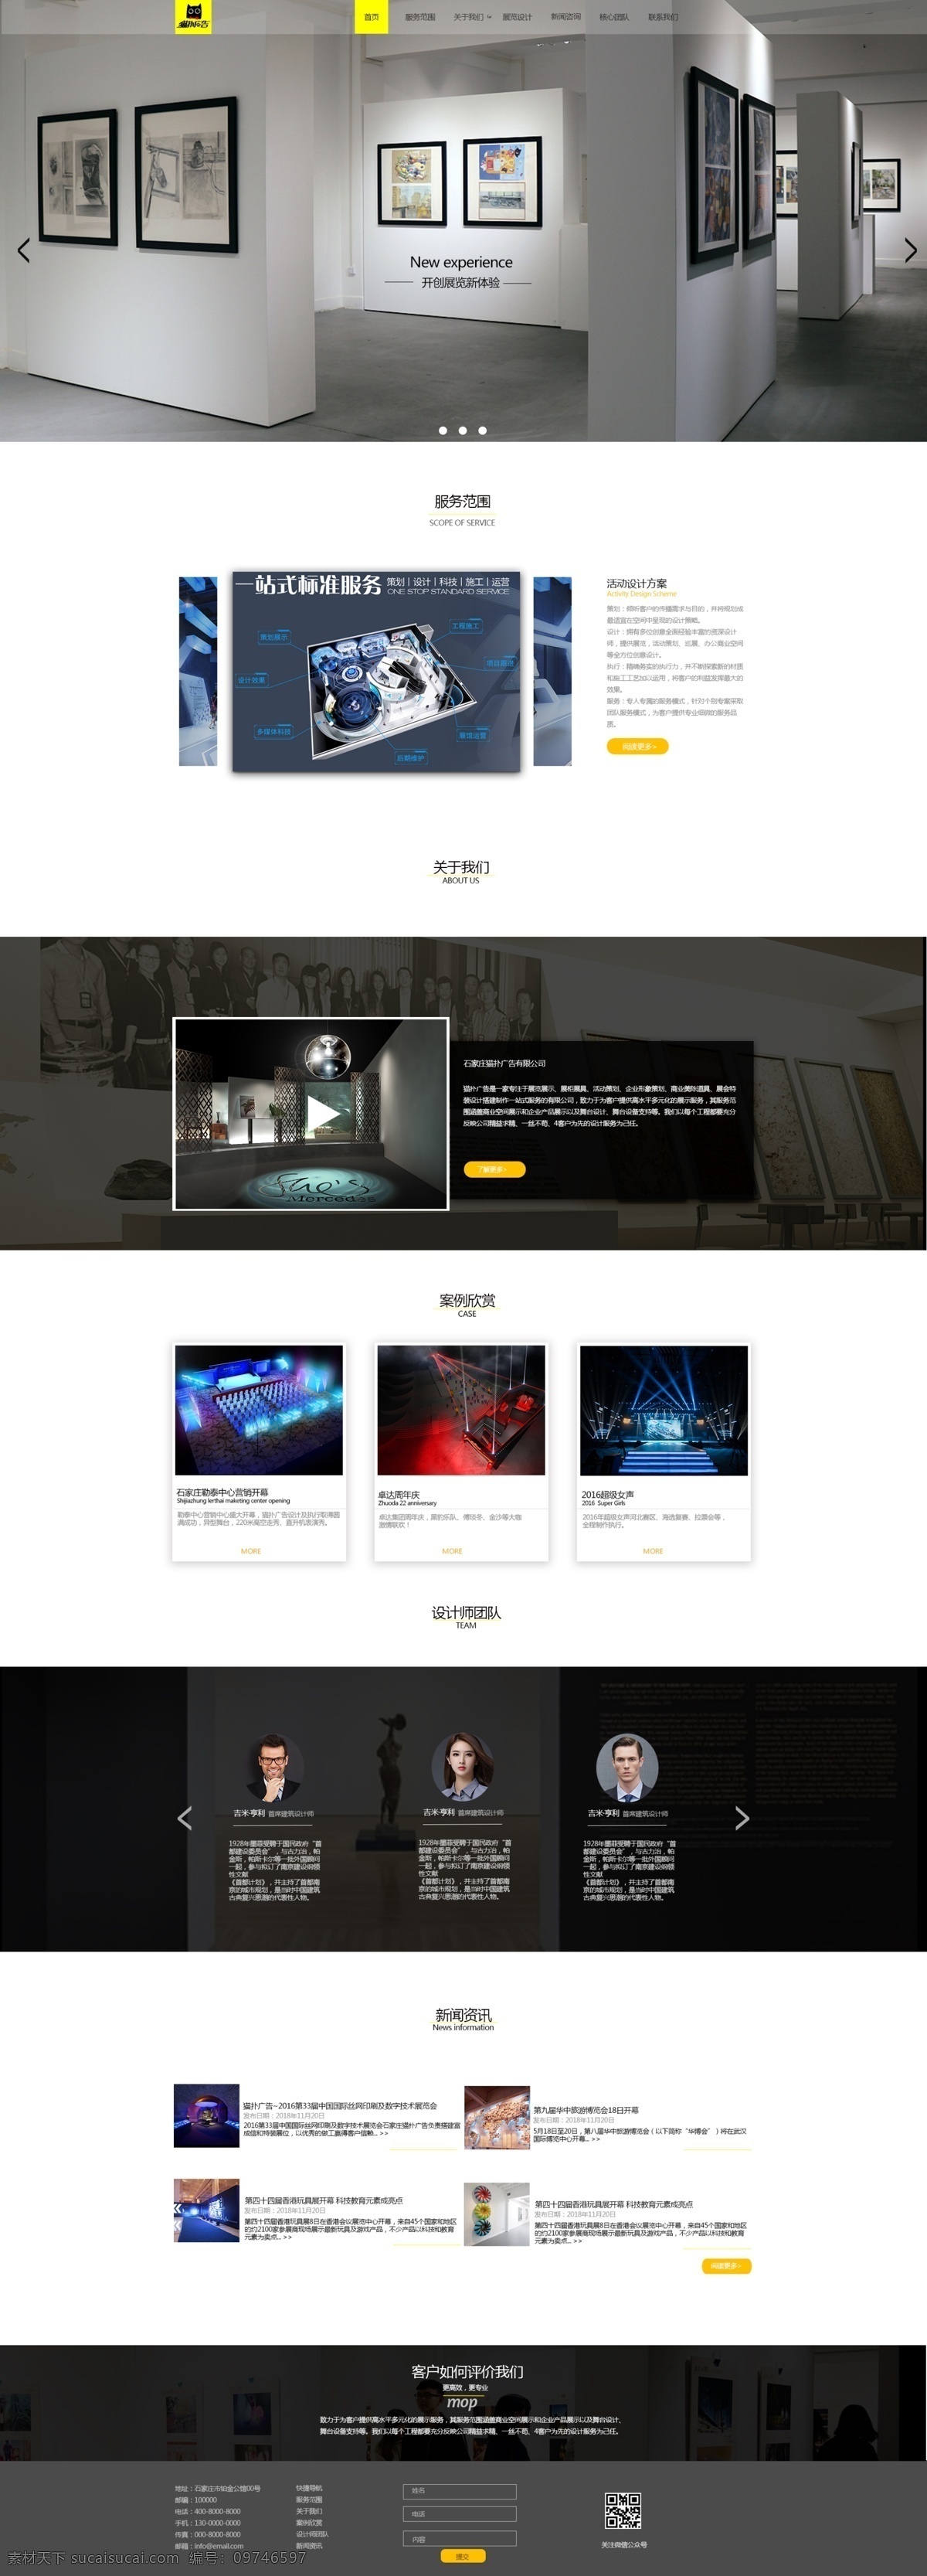 企业 广告网站 首页设计 网站 首页 个性设计 大气 web 界面设计 中文模板